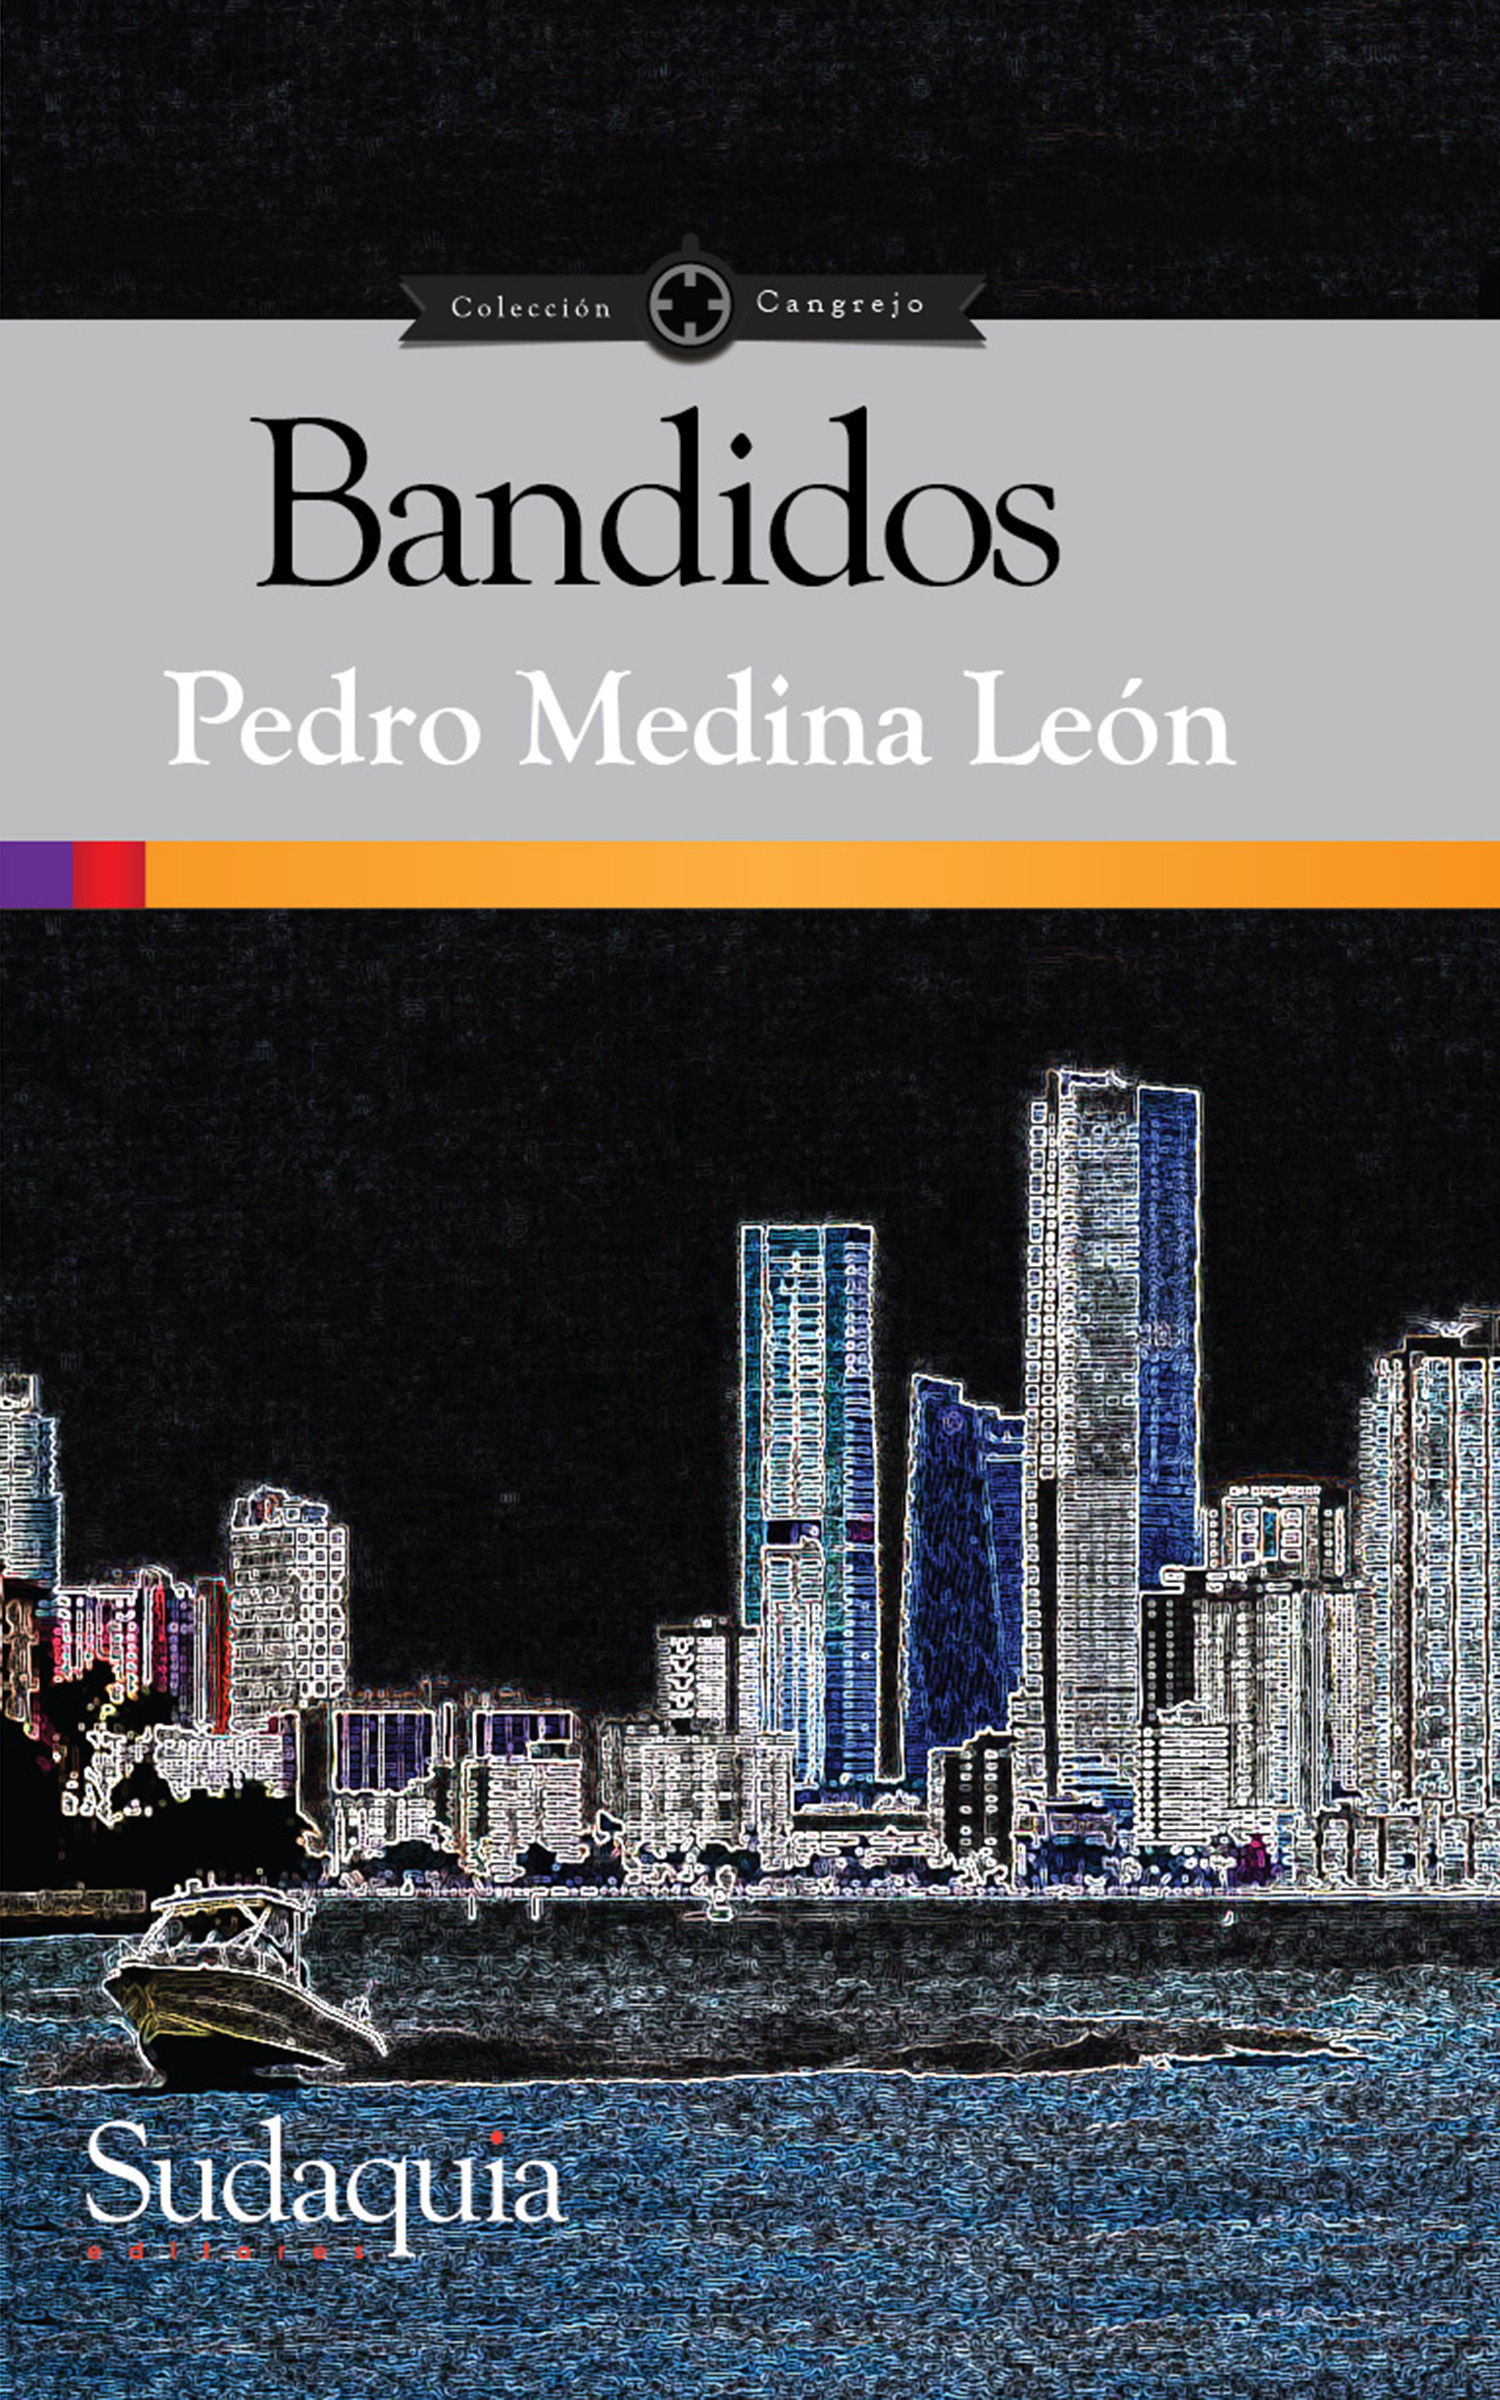 Bandidos book cover